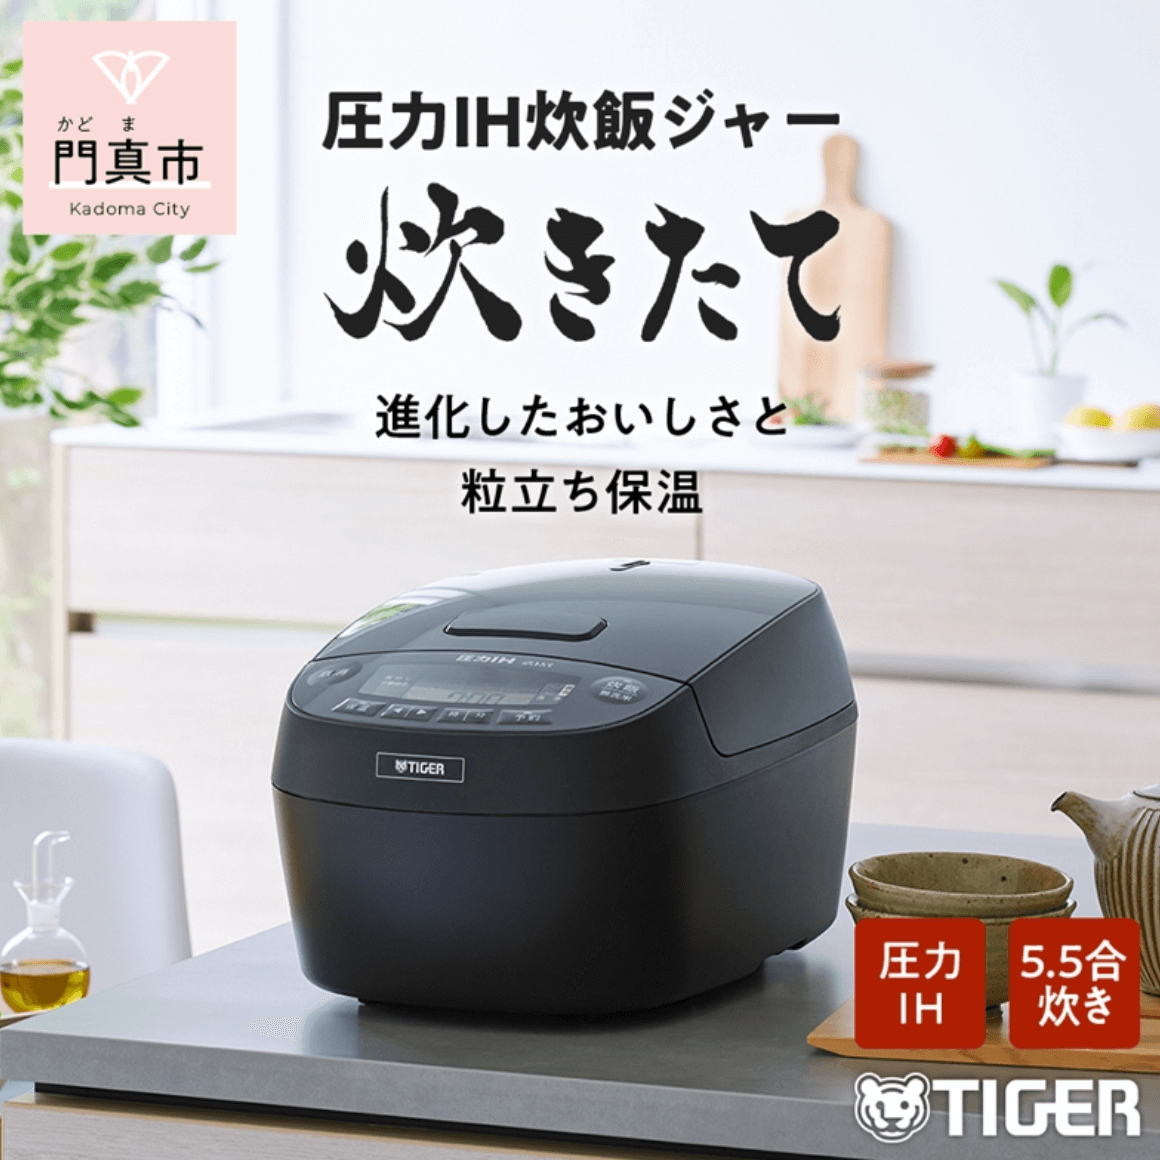 タイガー魔法瓶 圧力IHジャー炊飯器 JPV-C100KG 5.5合炊き